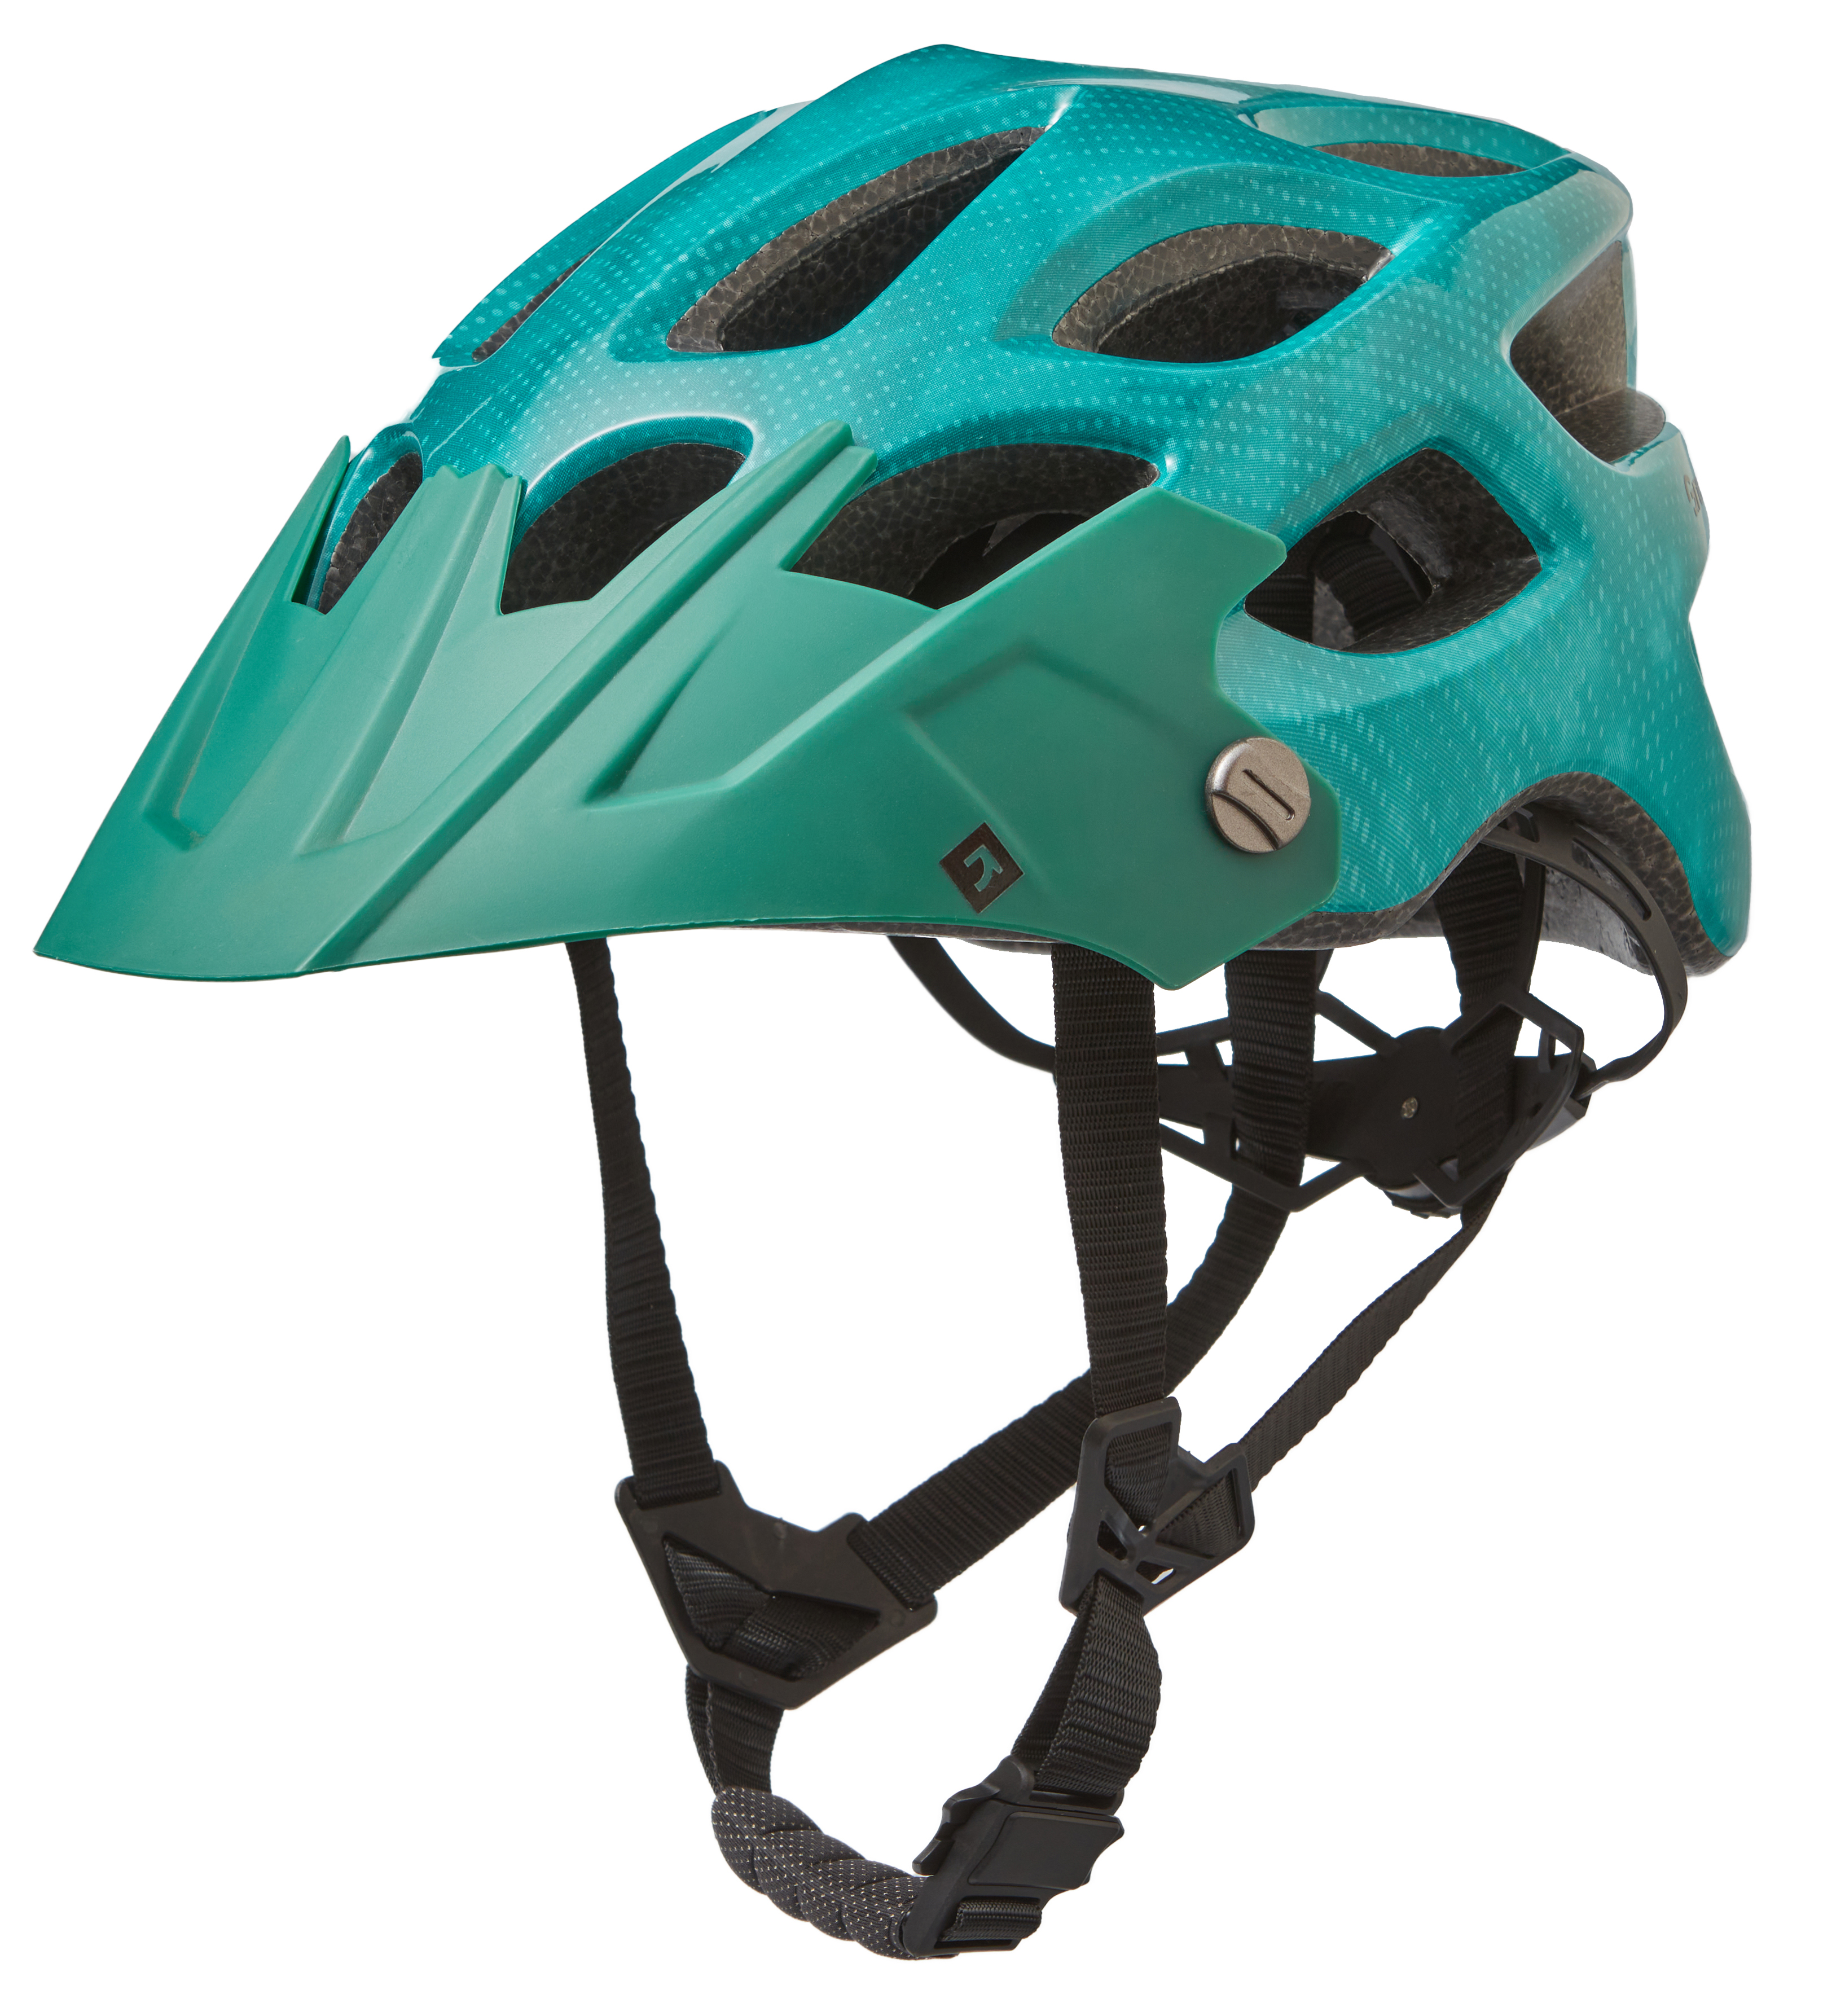 Шлем Green Cycle Revenge RS размер 54-58см зеленый